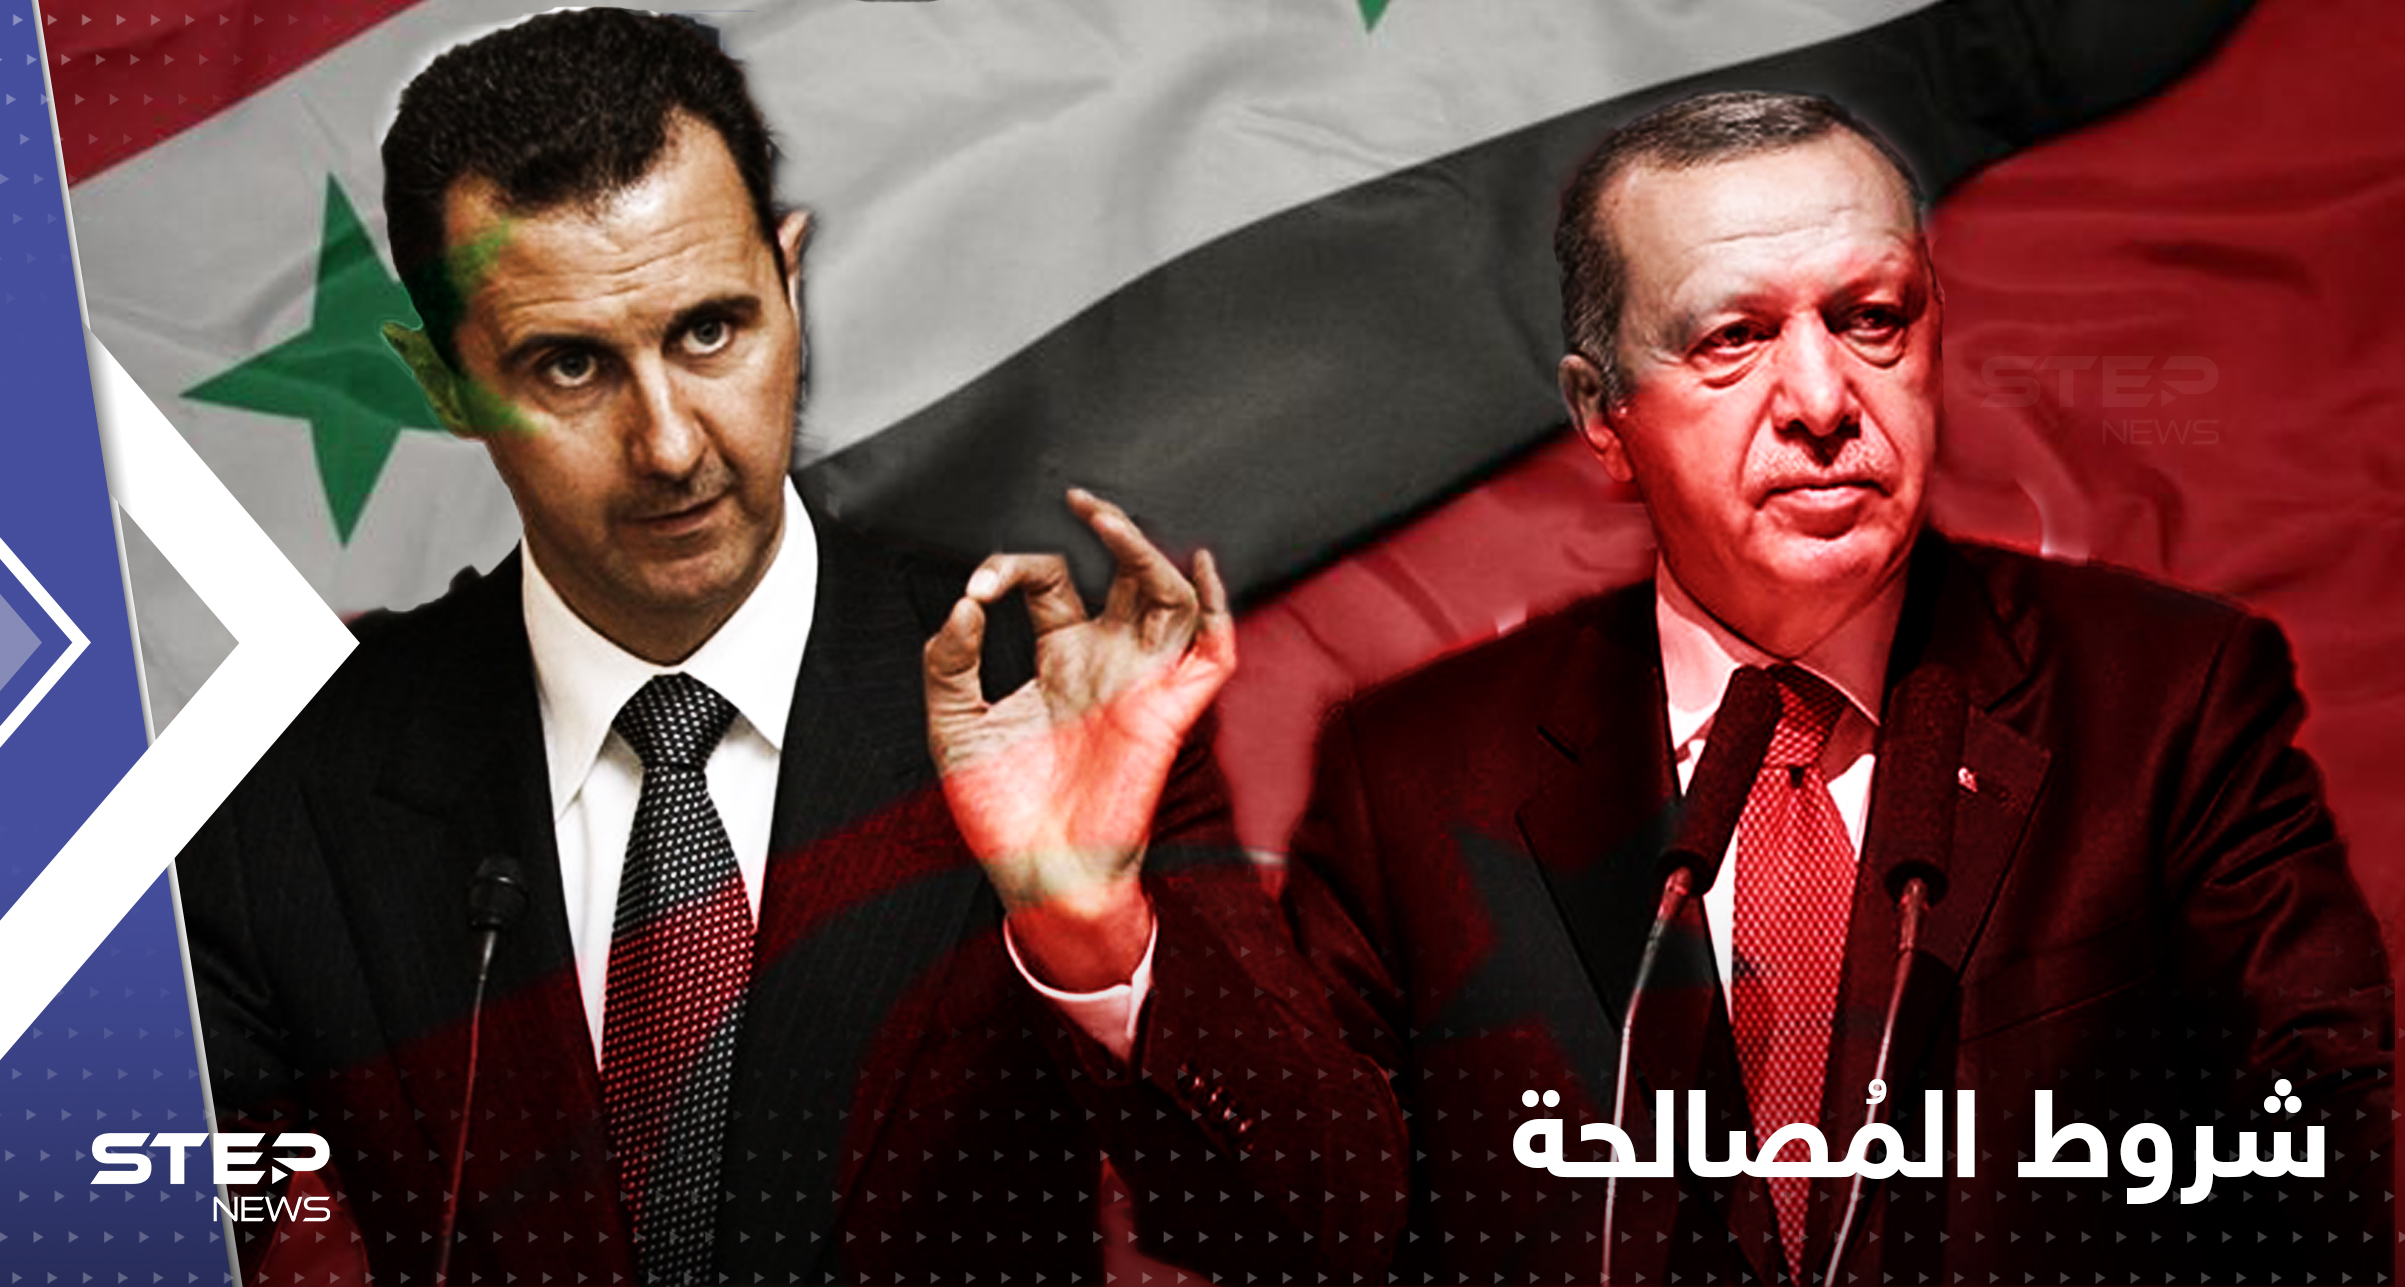 صحيفة تركية تكشف 5 شروط مطلوبة للمصالحة بين تركيا والنظام السوري